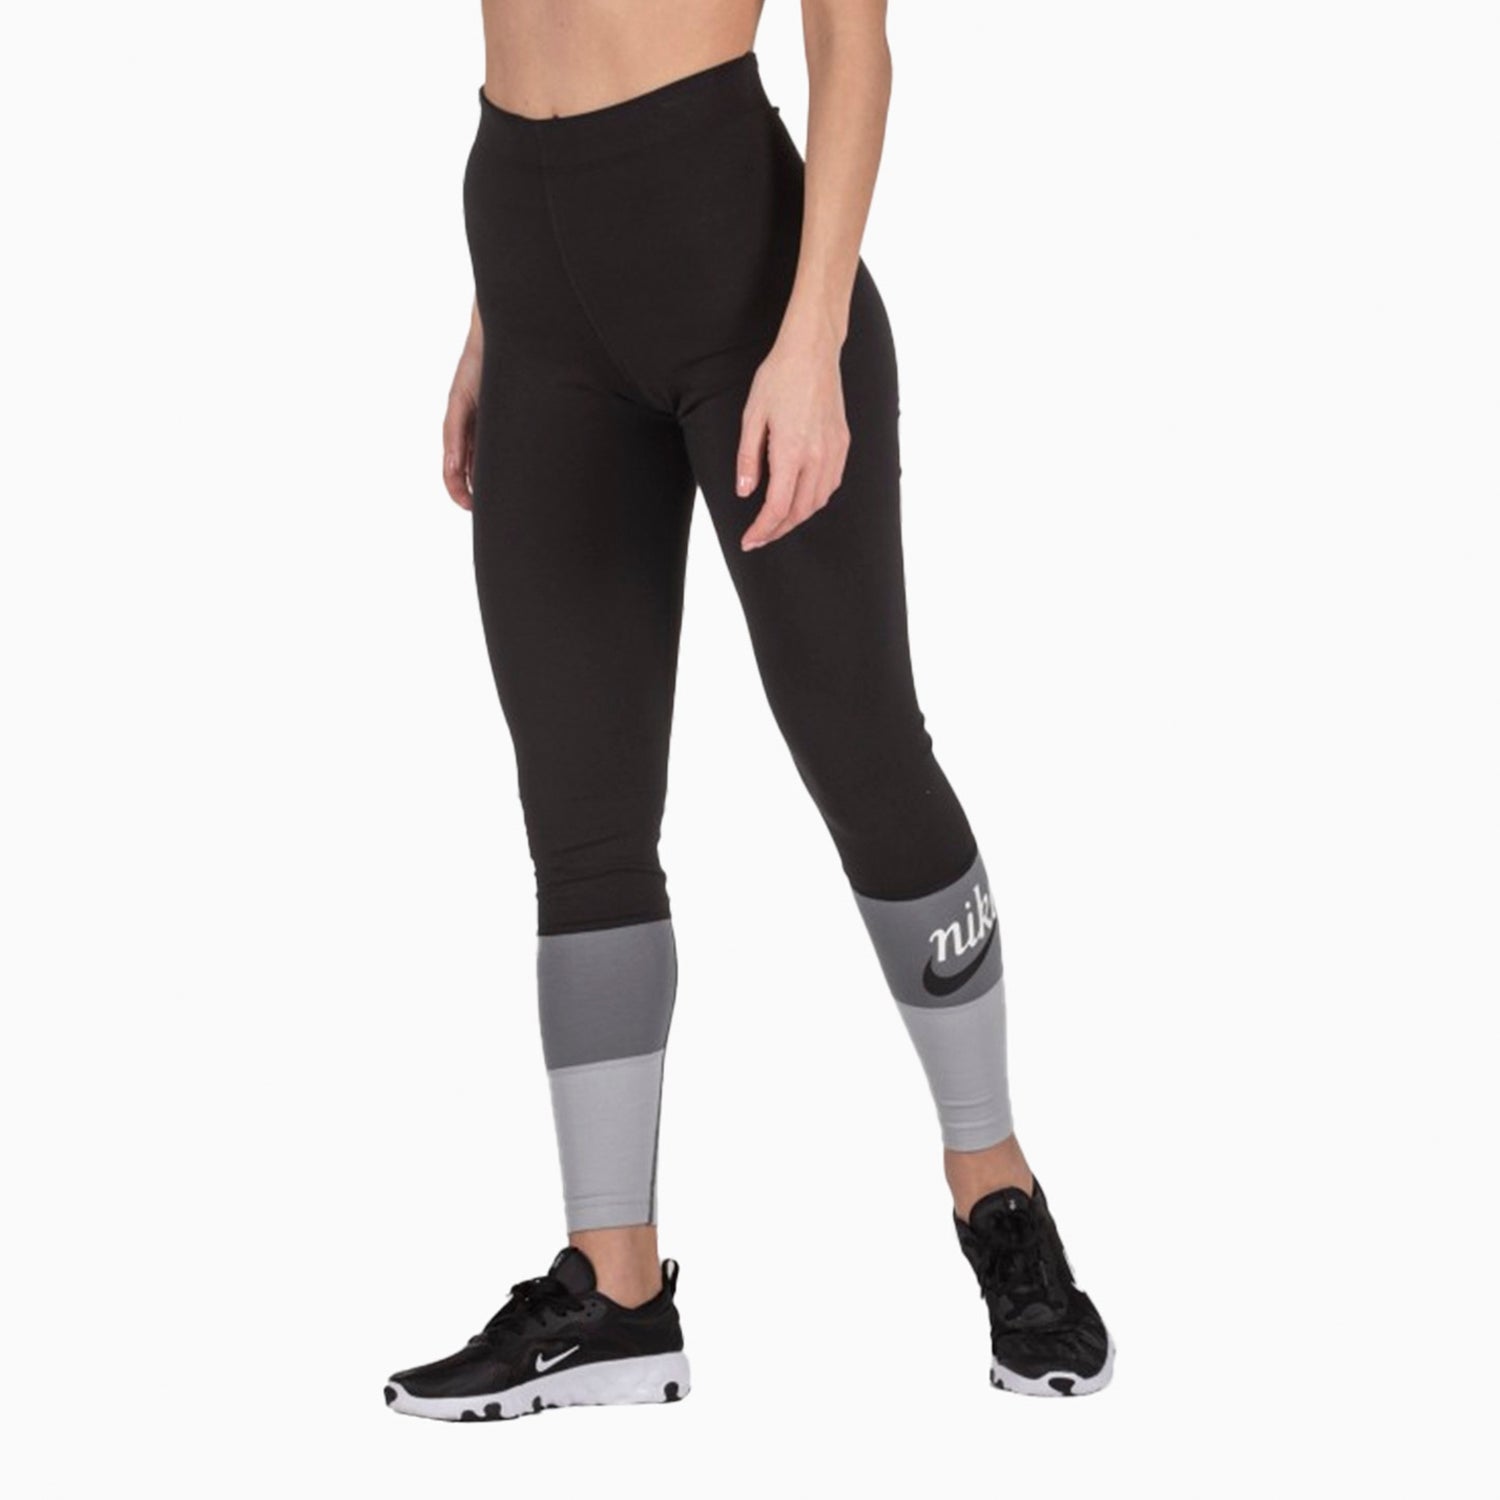 Women's Nike Sportswear Varsity 7/8 Legging